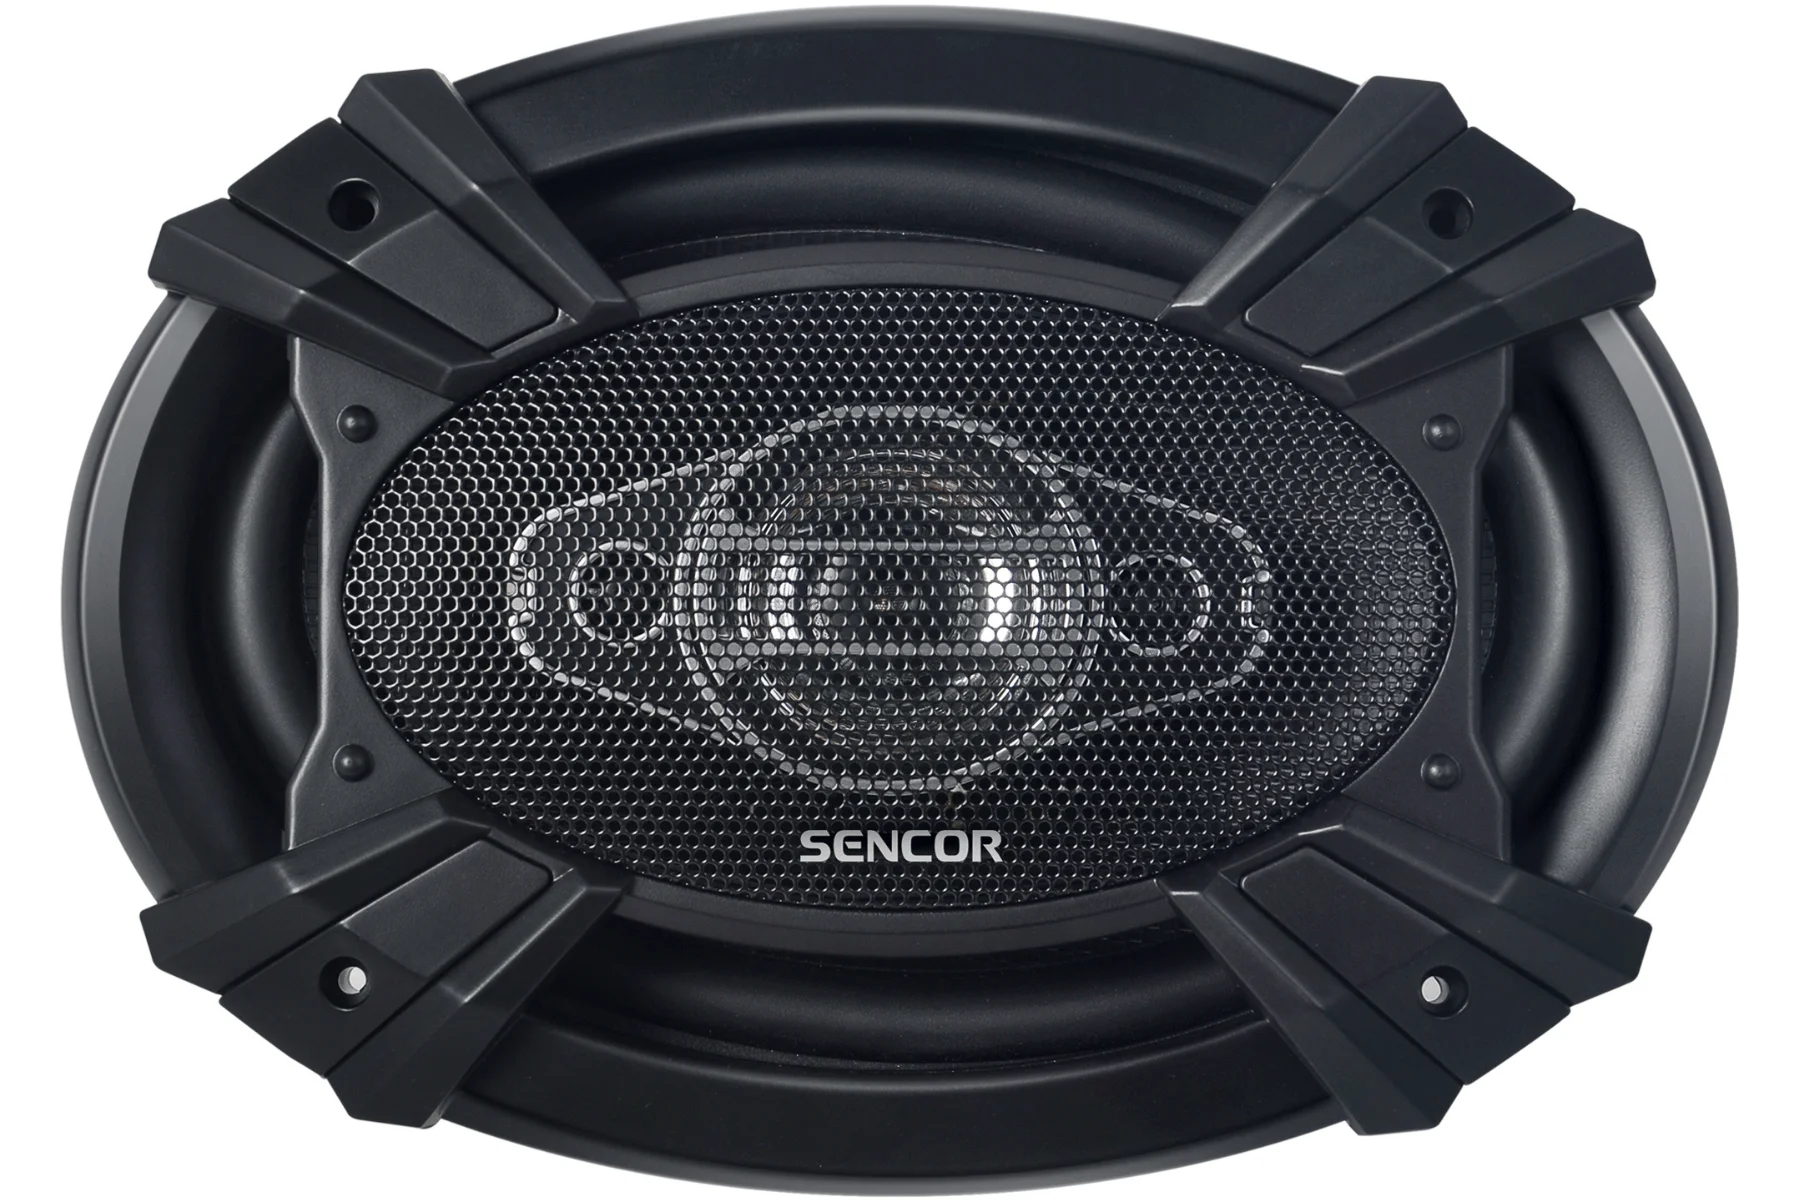 Štvorpásmové koaxiálne autoreproduktory Sencor SCS BX6902 kvalita zvuku